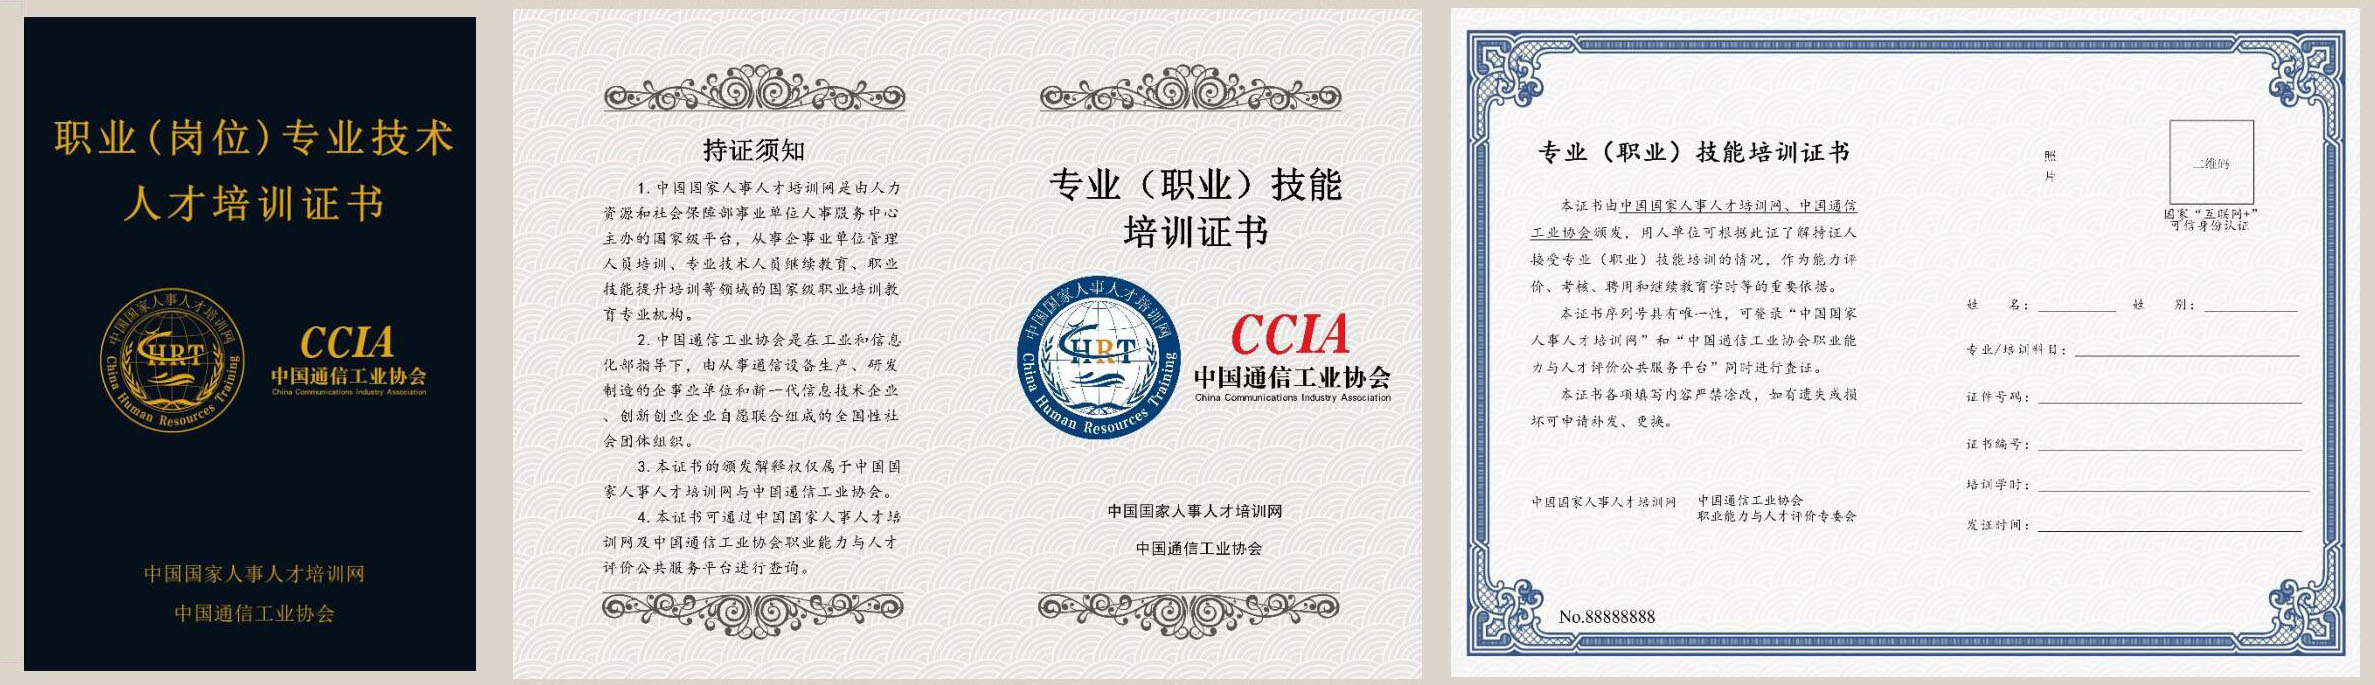 中国国家人事人才培训网 供应链管理师 职业（岗位）专业技术人才培训证书